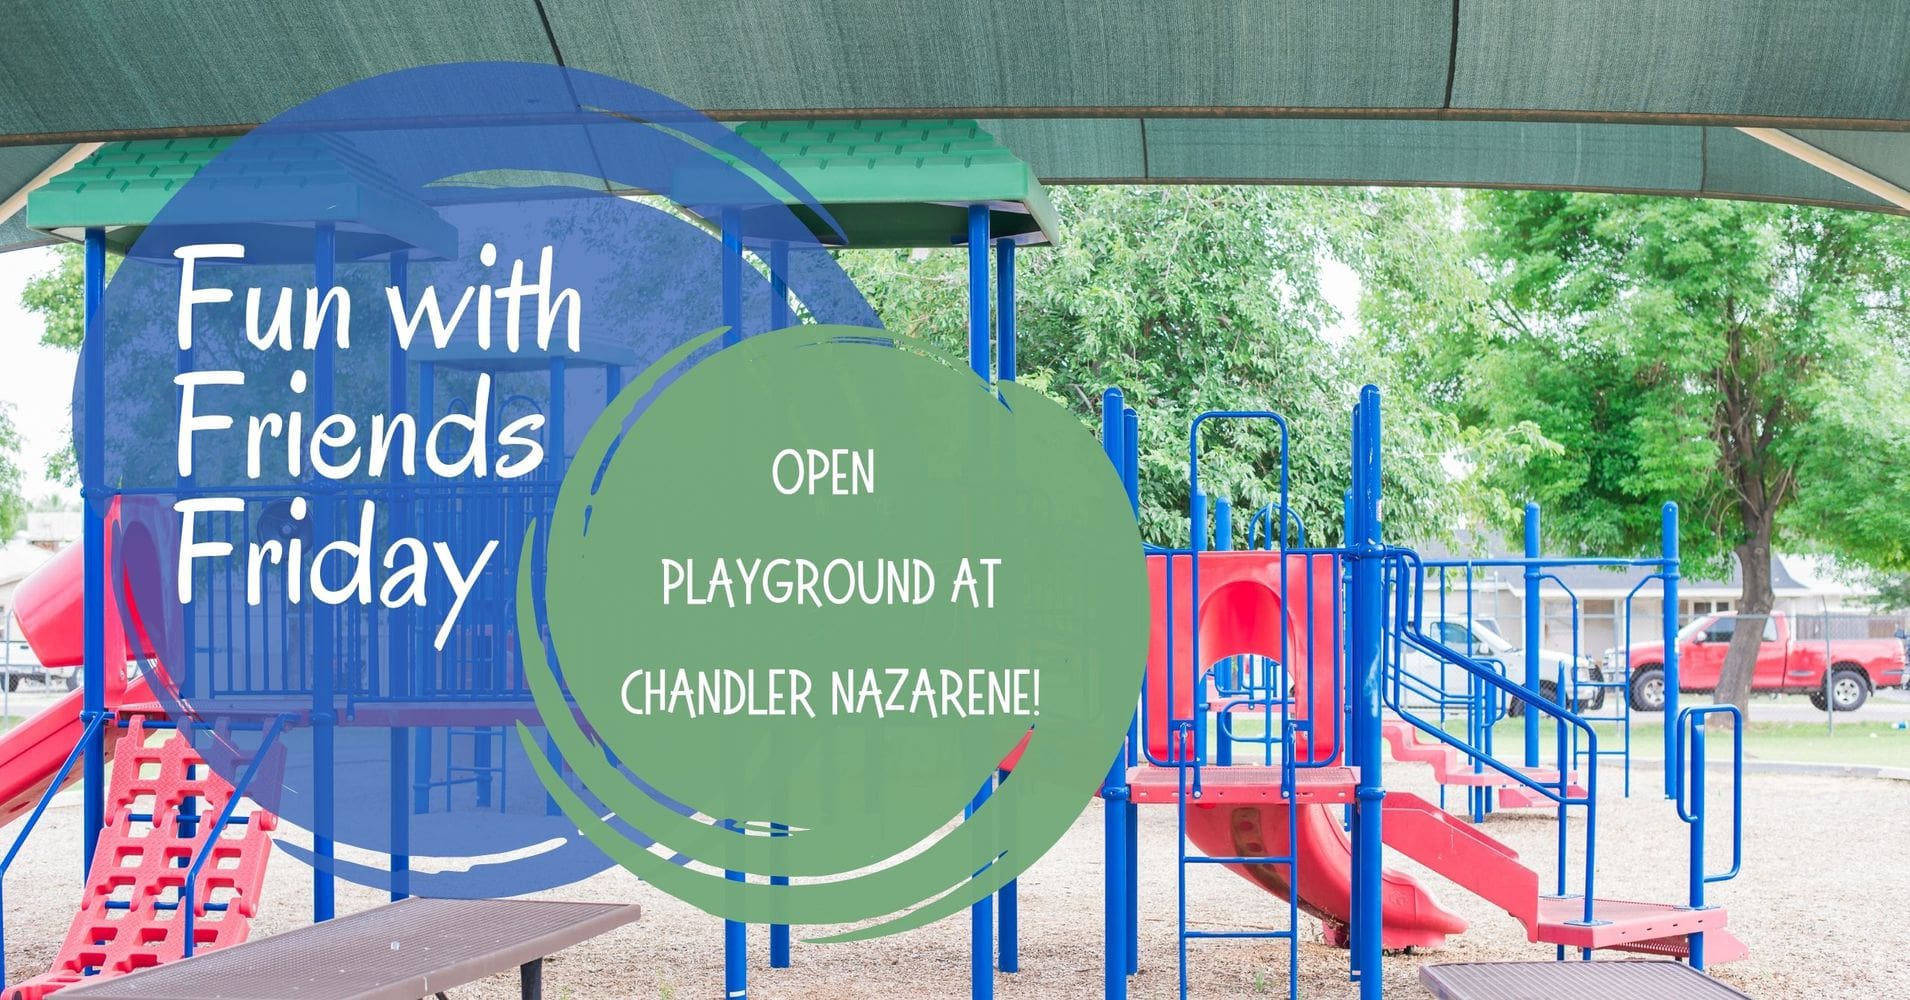 Open Playground at Chandler Nazarene